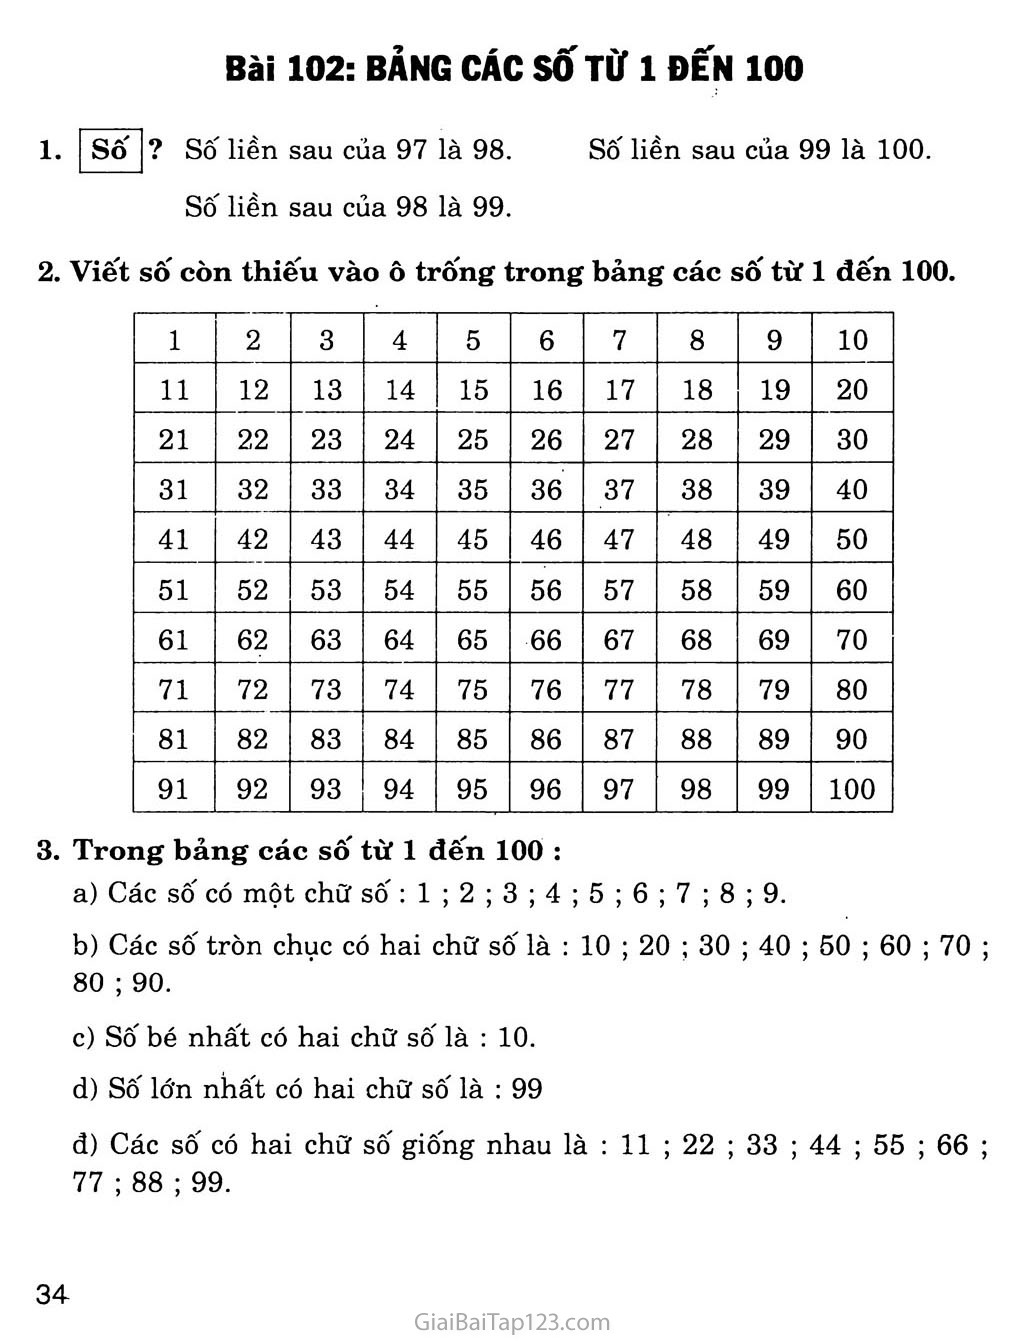 Bài 102: Bảng các số từ 1 đến 100 trang 1